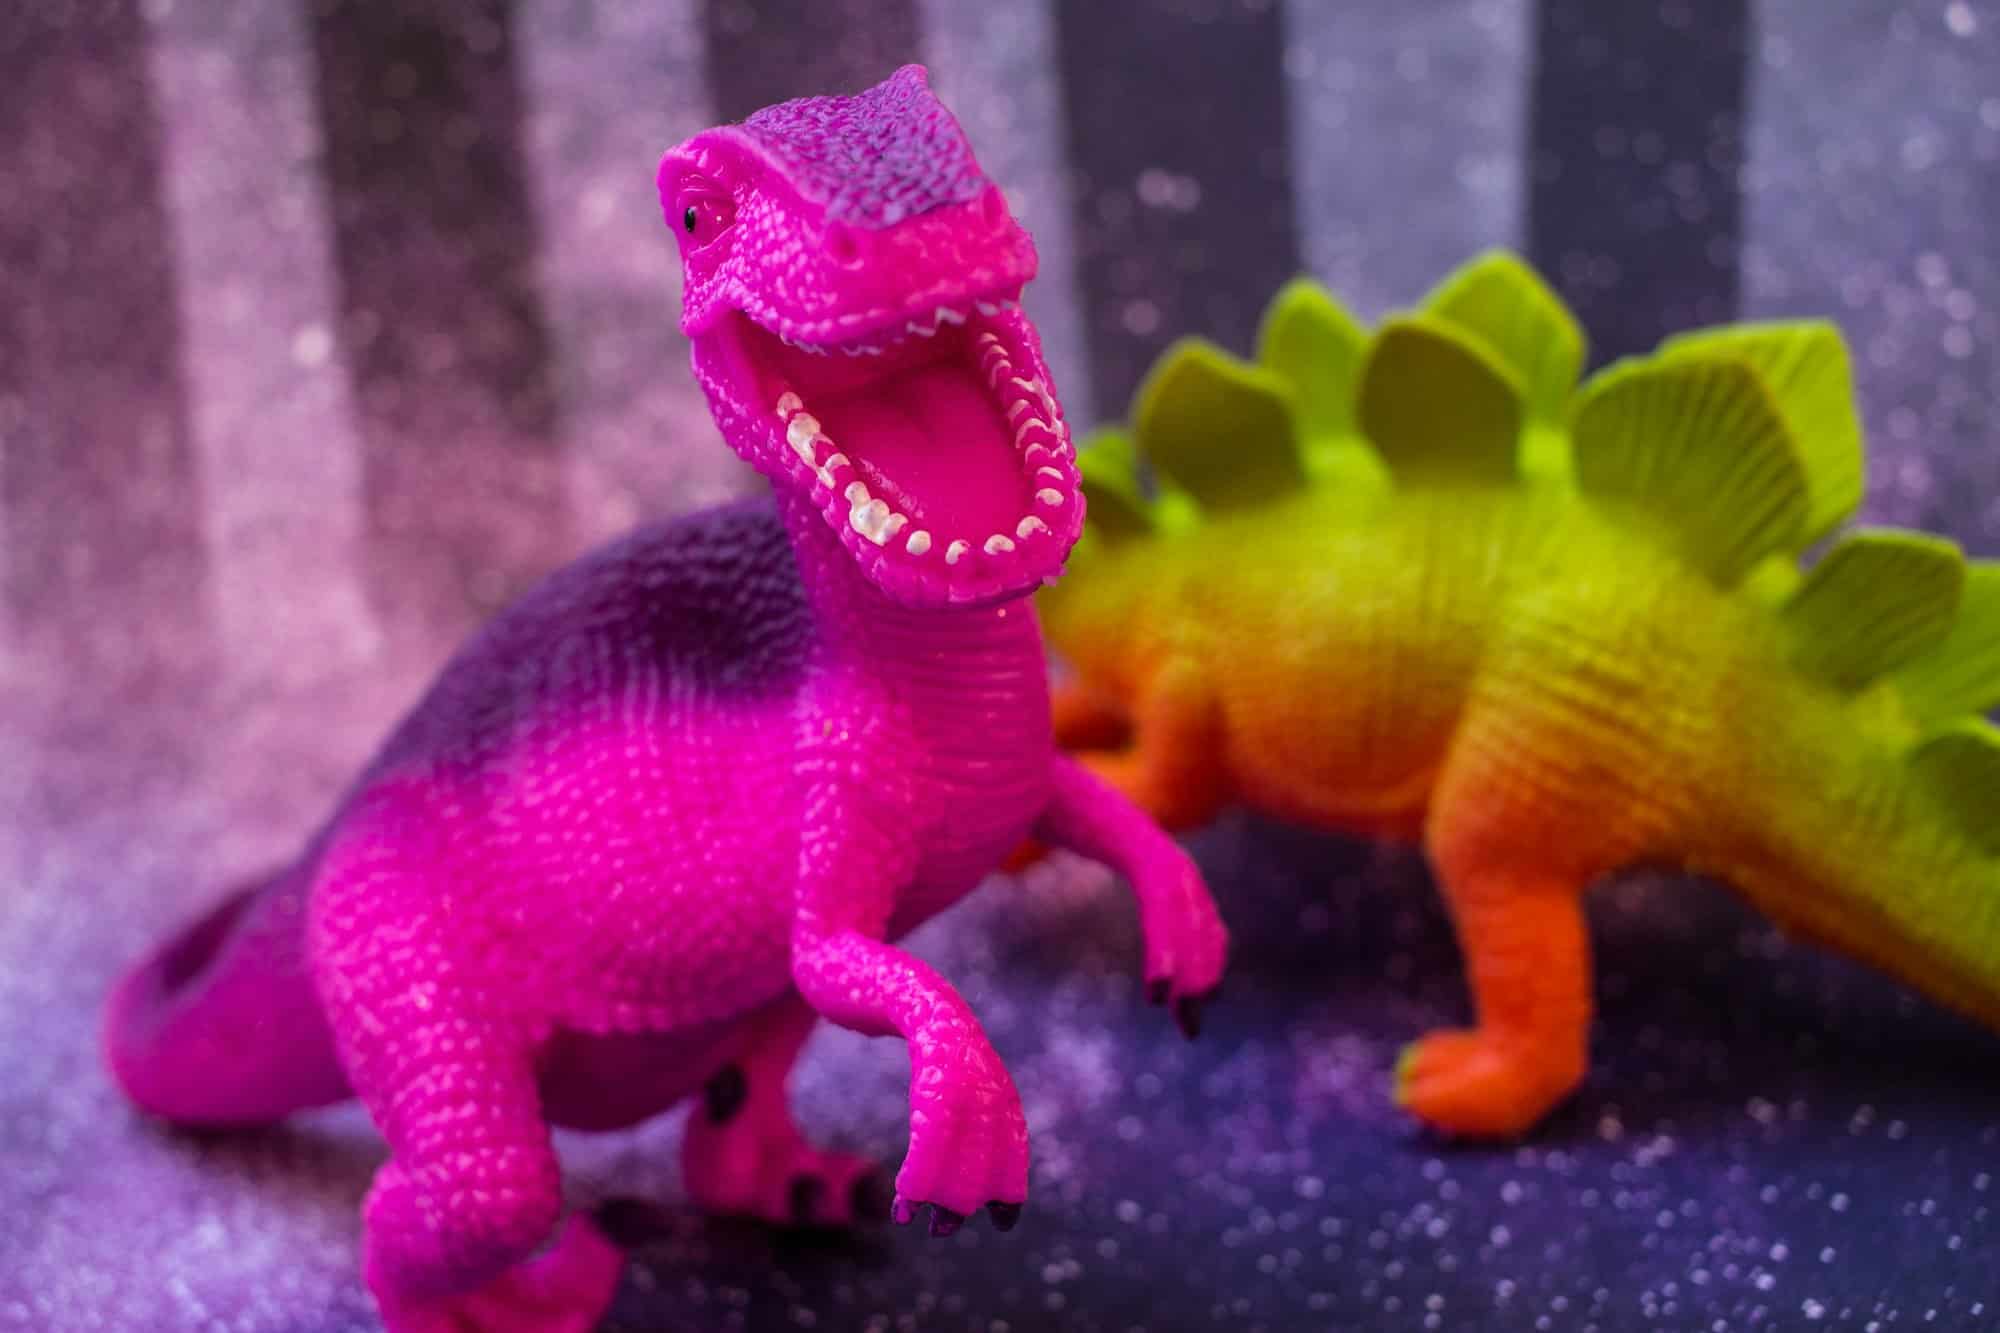 Quels sont les avantages de jouer avec des jouets dinosaure pour le développement des enfants ?